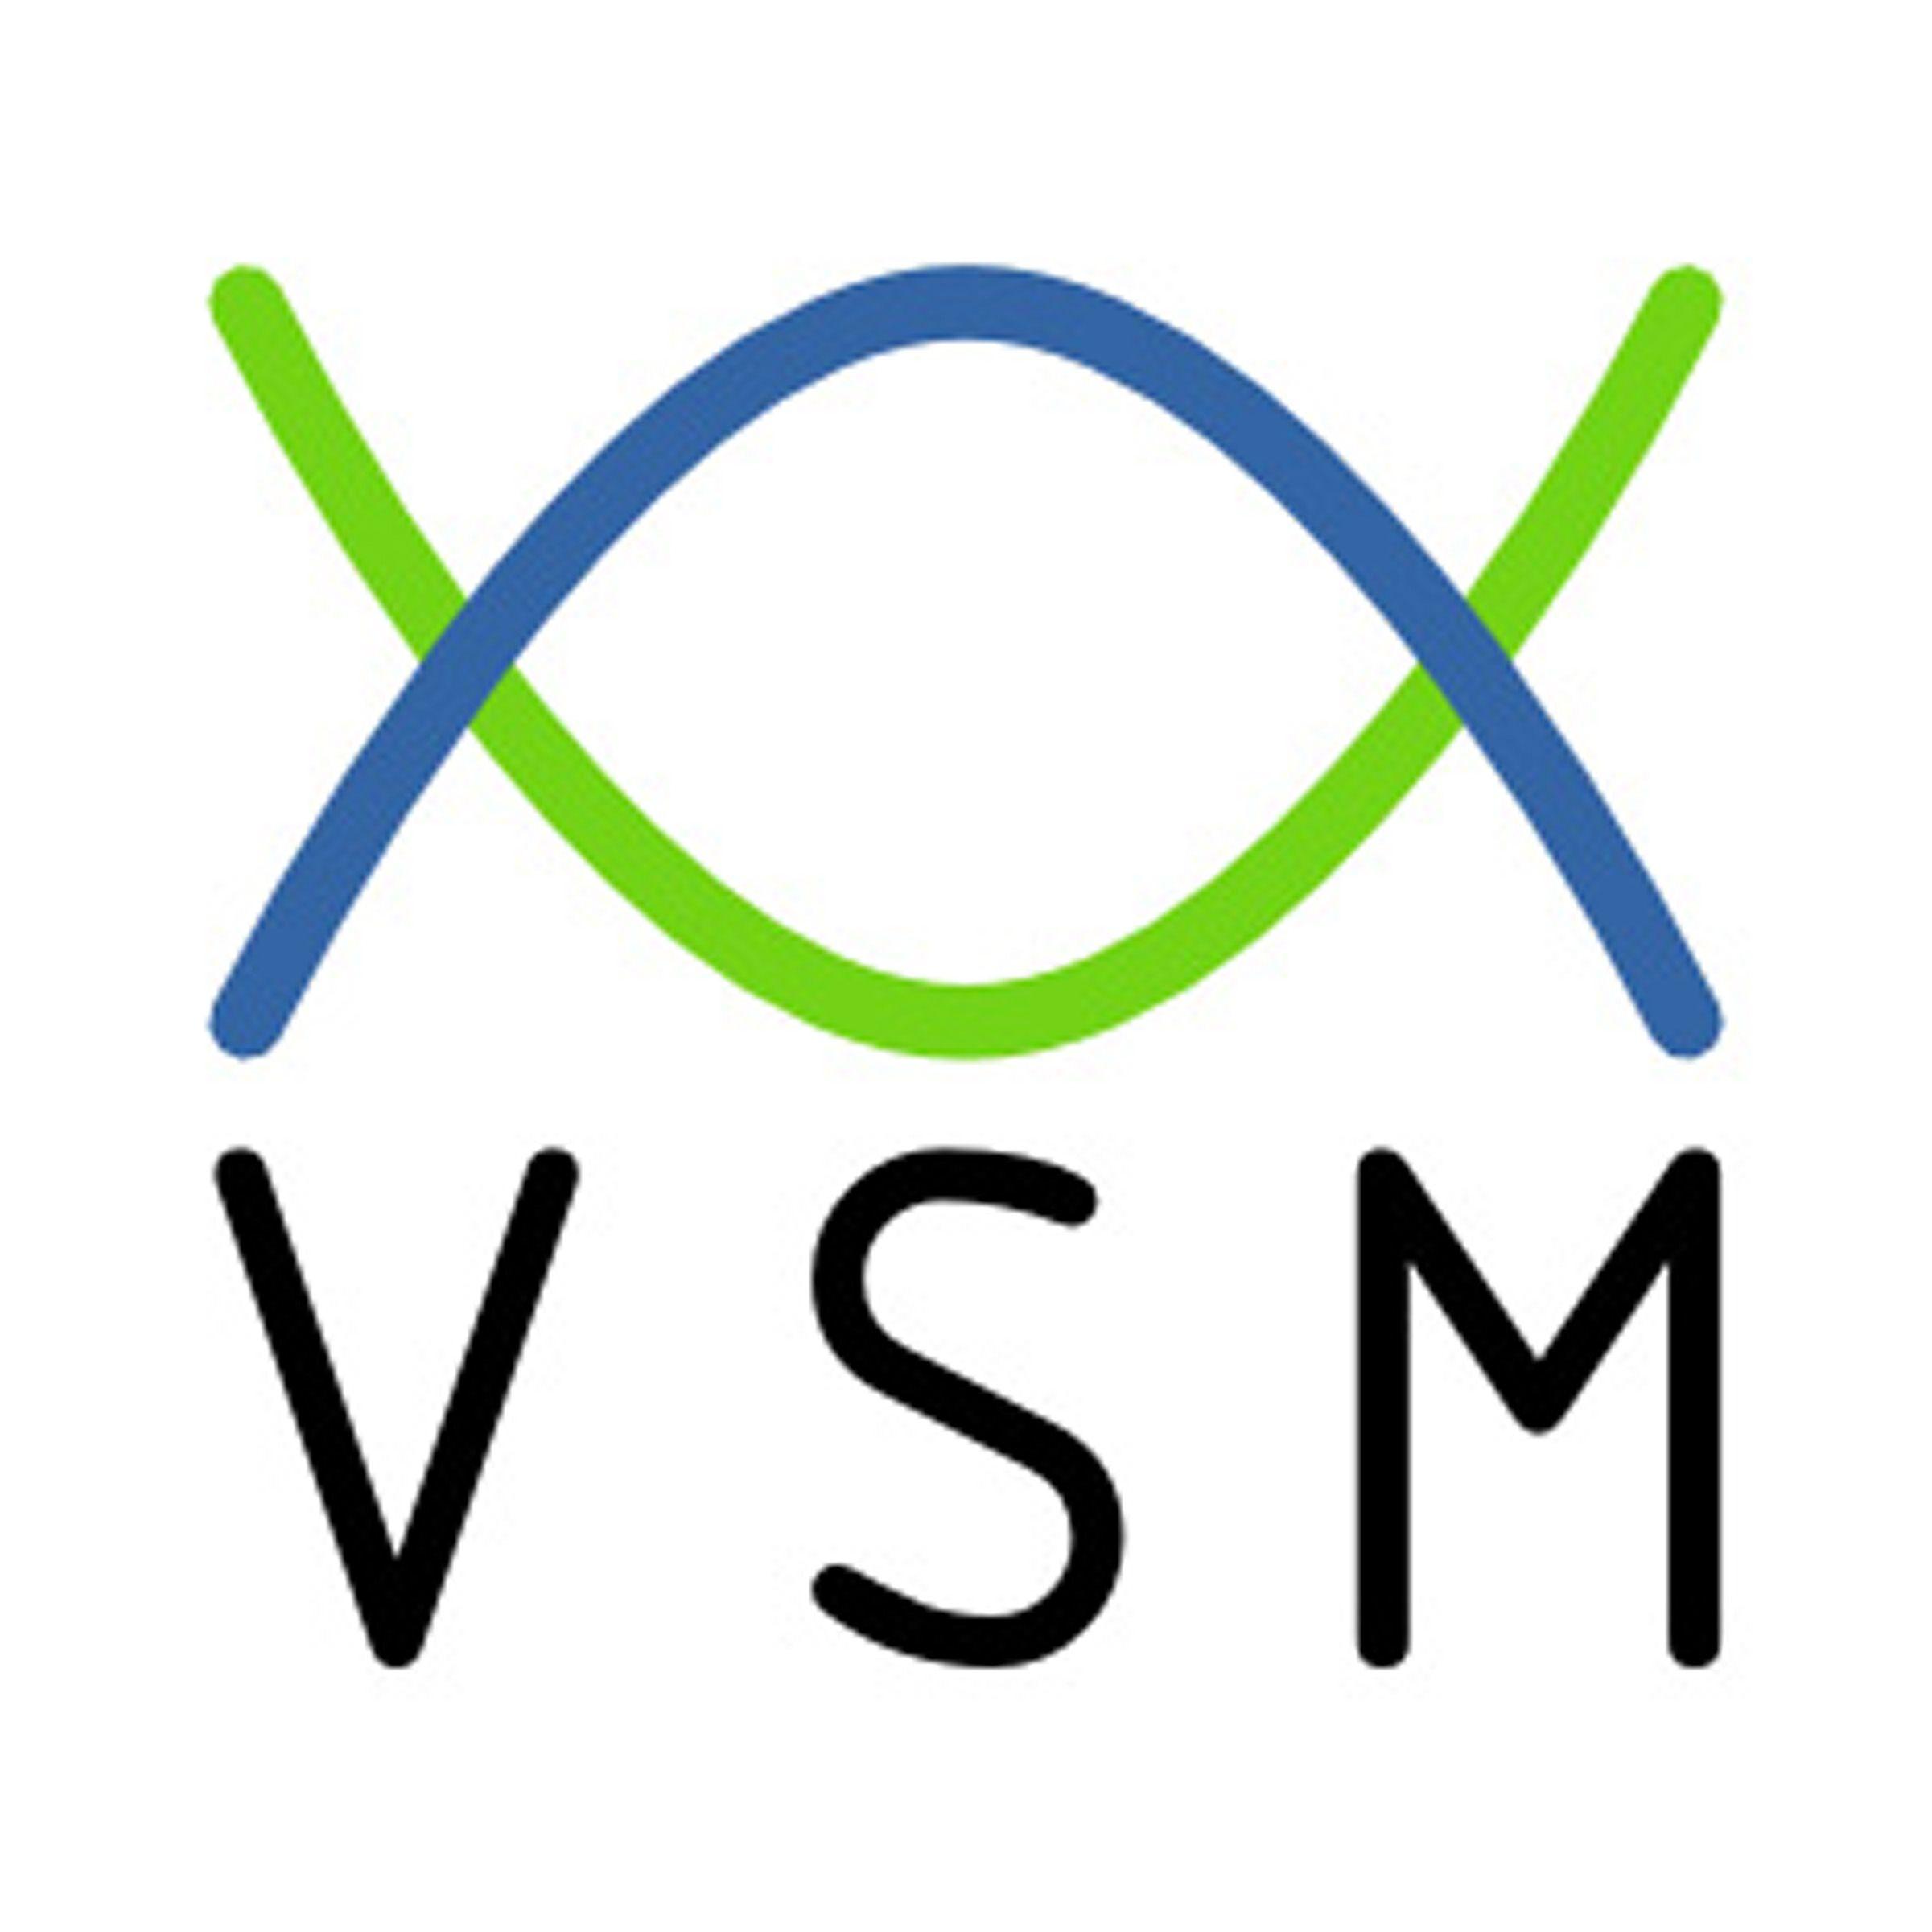 VSM Logo - VSM Training, Value Stream Mapping Training